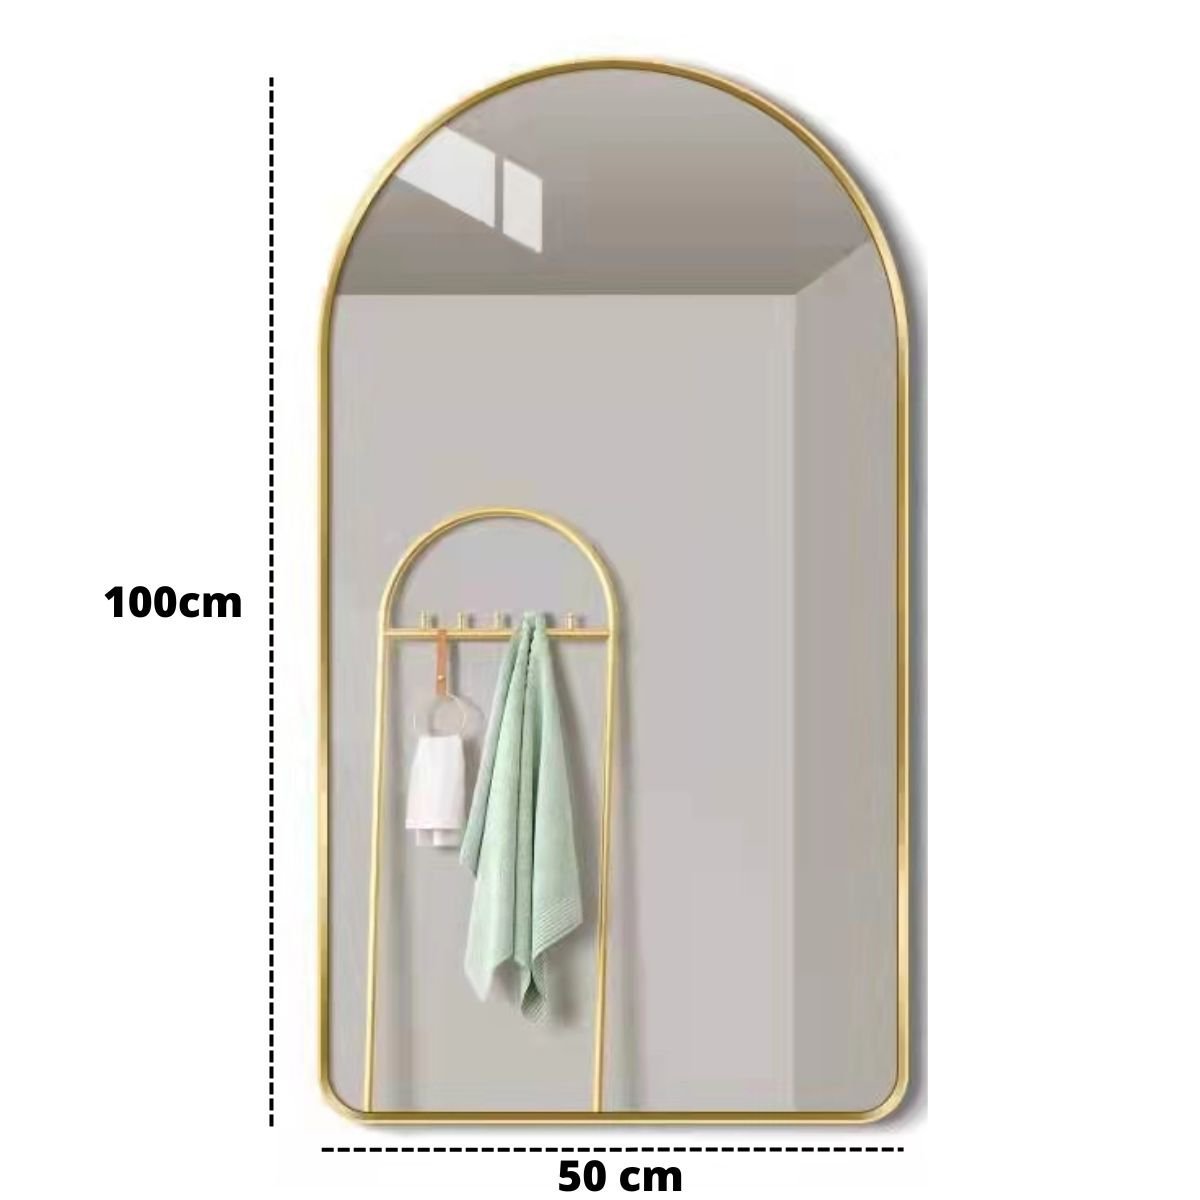 Espelho Decorativo Oval Janela Base Reta com Moldura Metal Preto 100 X 50 Cm - 5